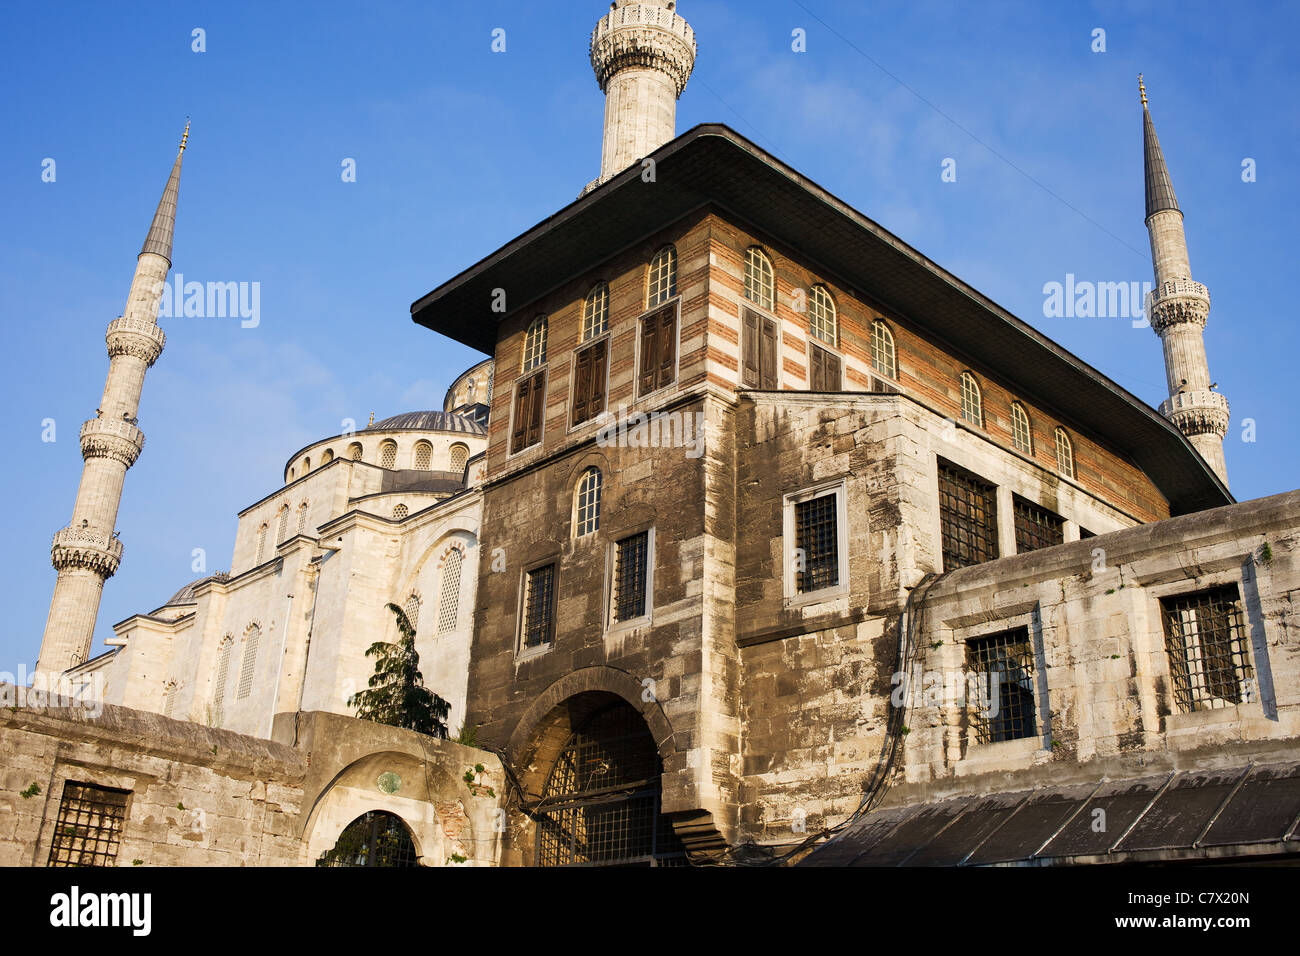 L'architecture ottomane dans le quartier historique de Sultanahmet, Istanbul, Turquie. Banque D'Images